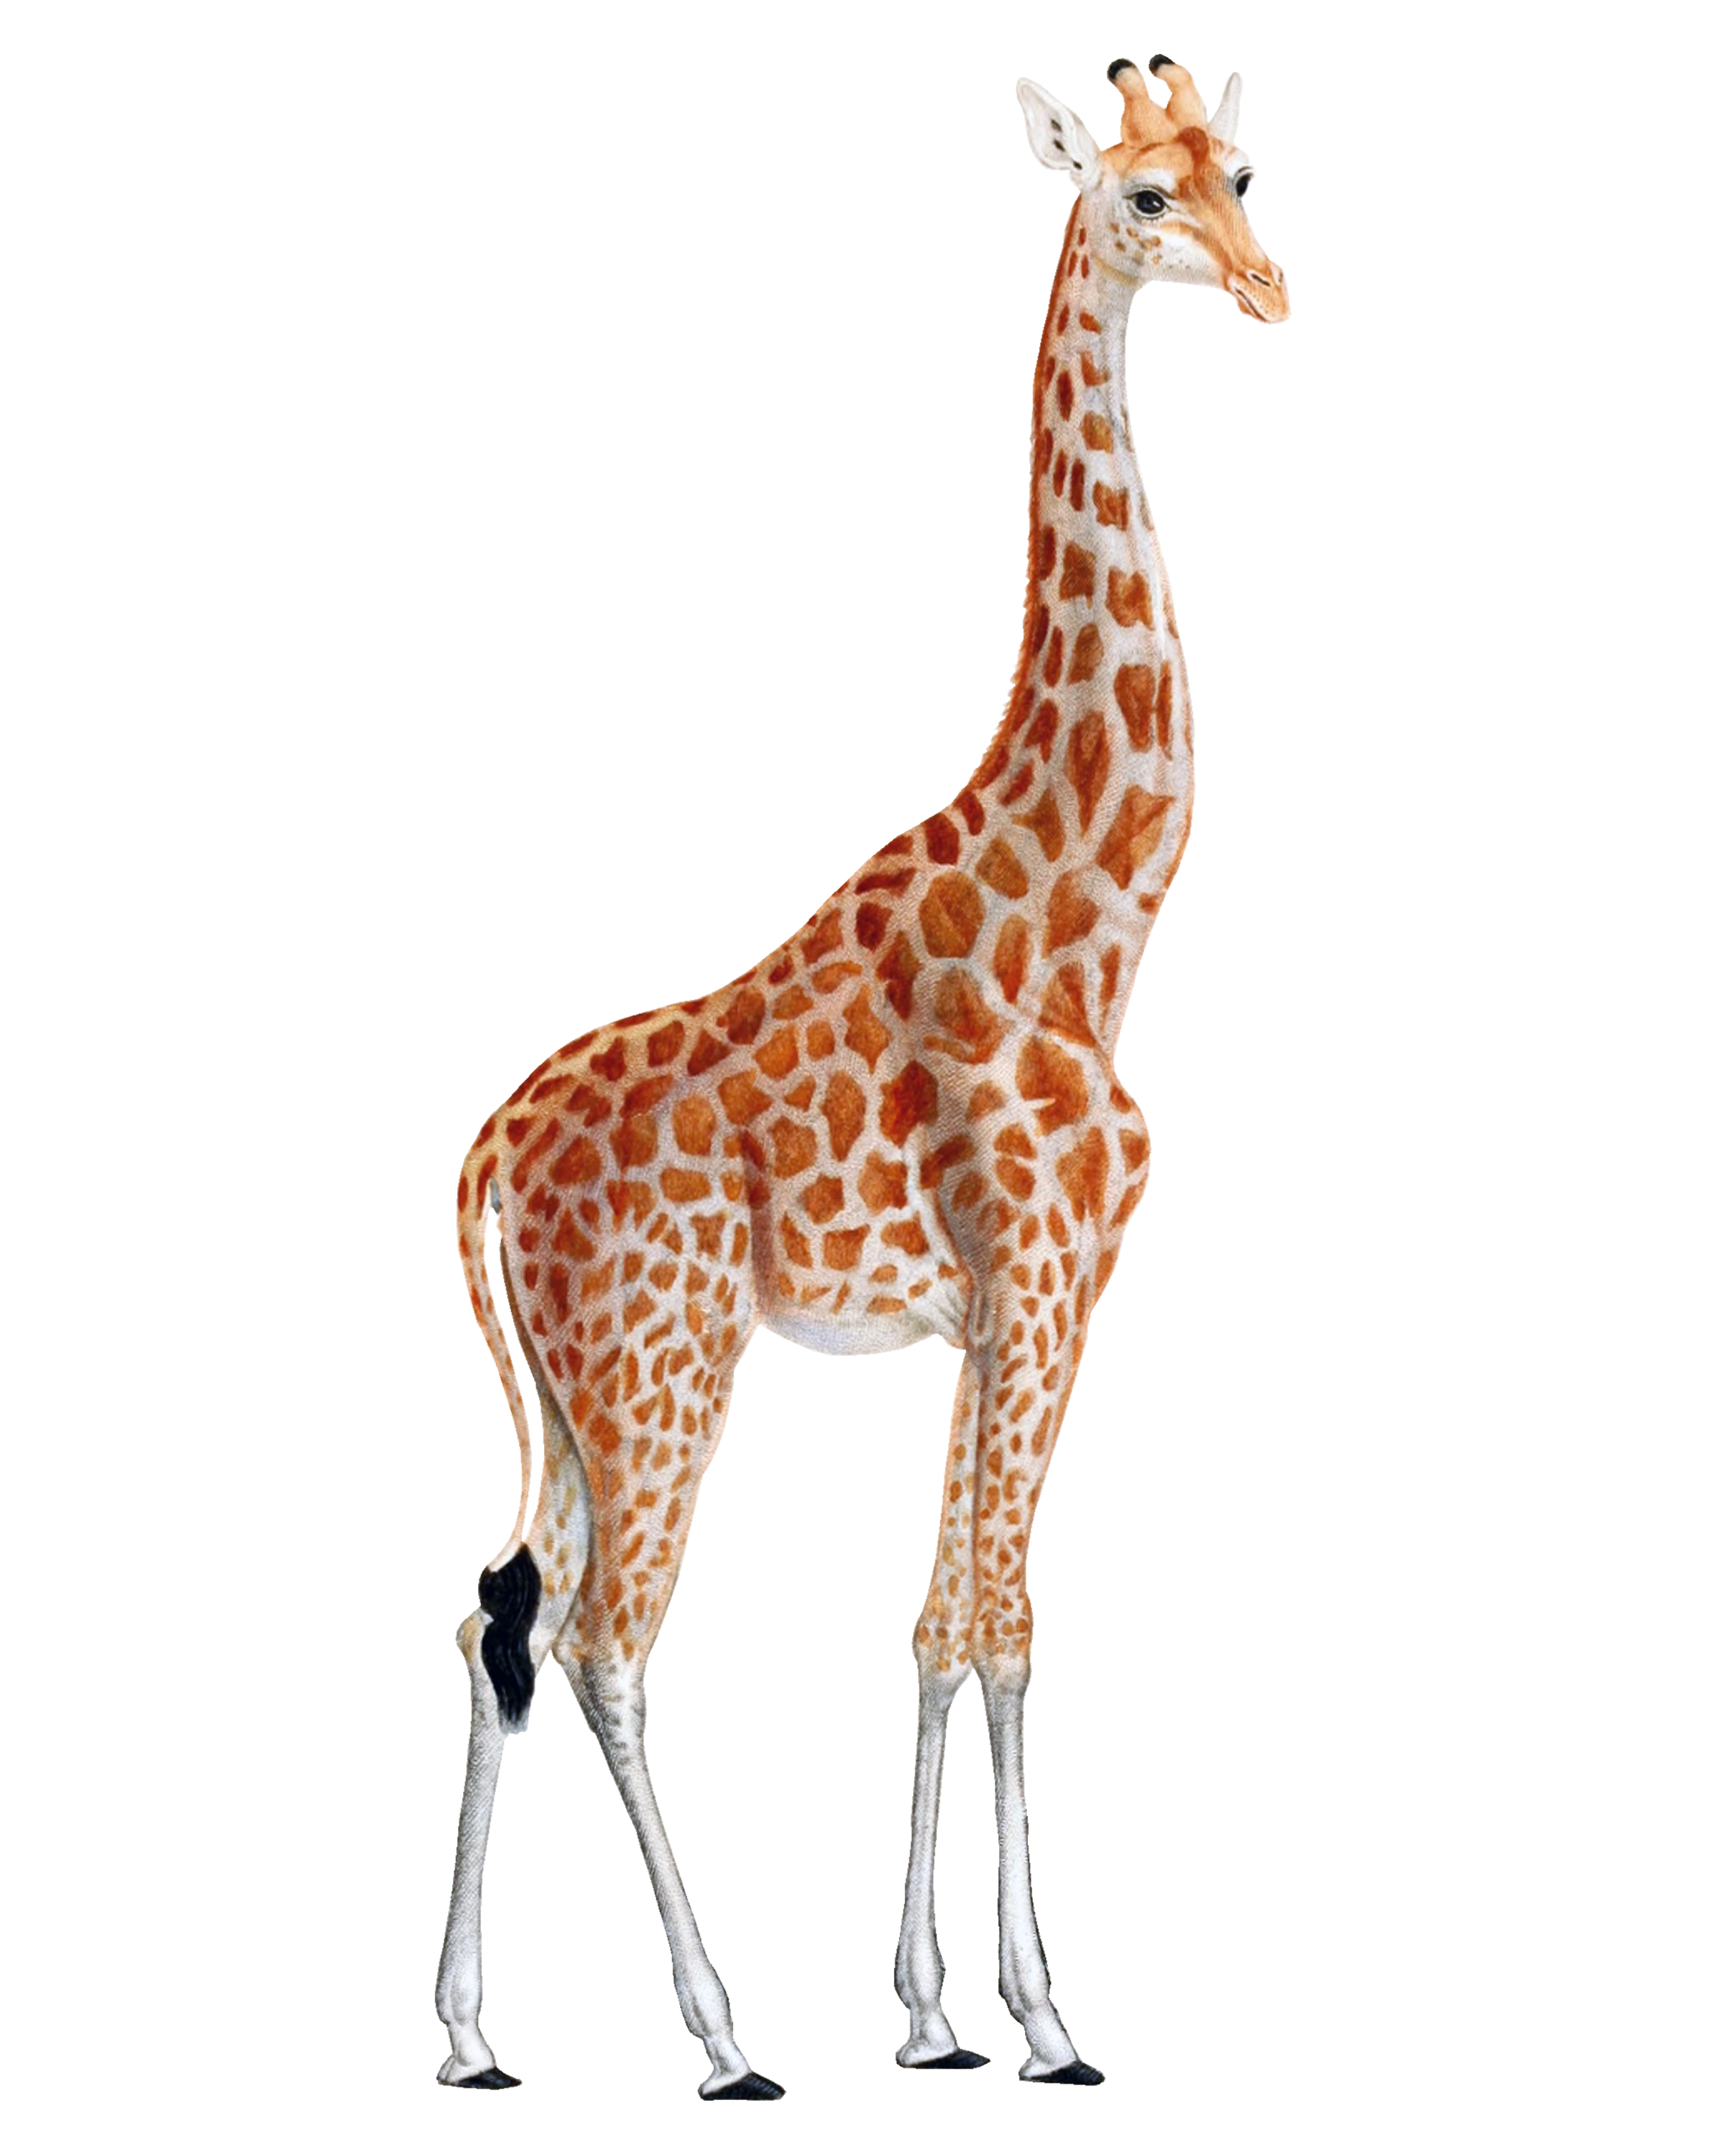 Giraffe Png - Giraffe, Transparent background PNG HD thumbnail